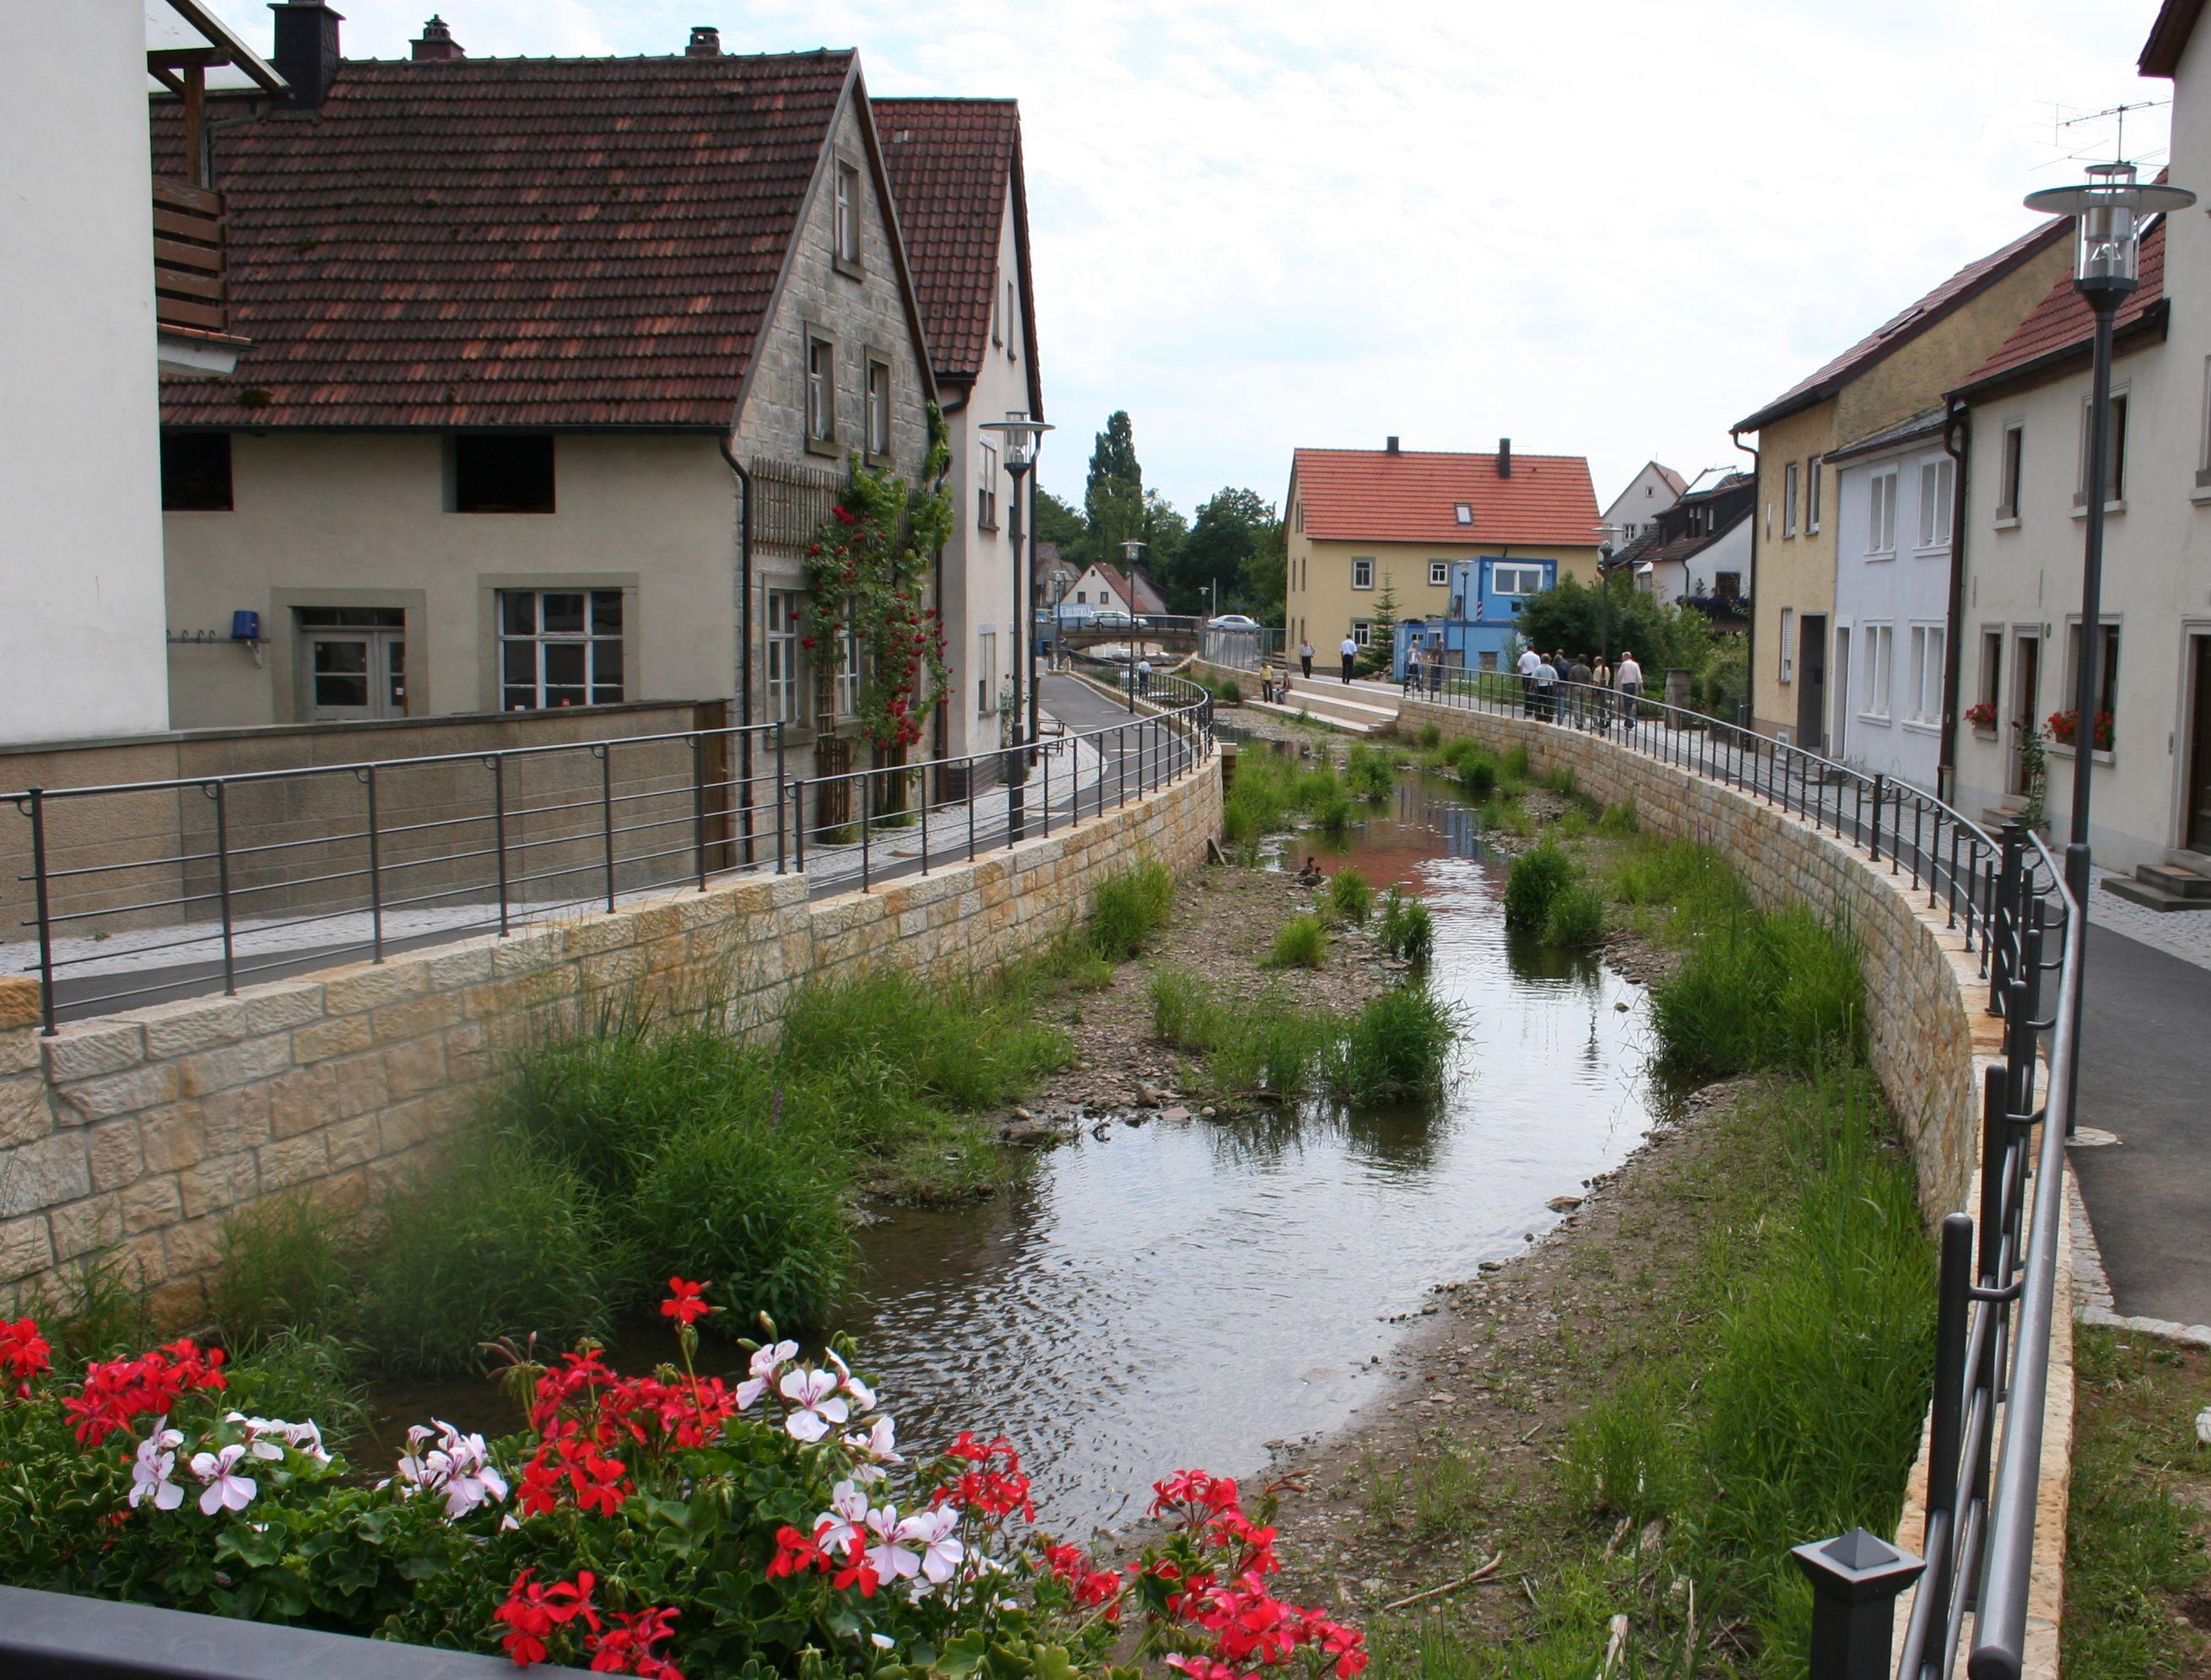  In Zeil am Main wurden beim Ausbau des örtlichen Bachlaufs Hochwasserschutz, Städtebau und Ökologie kombiniert